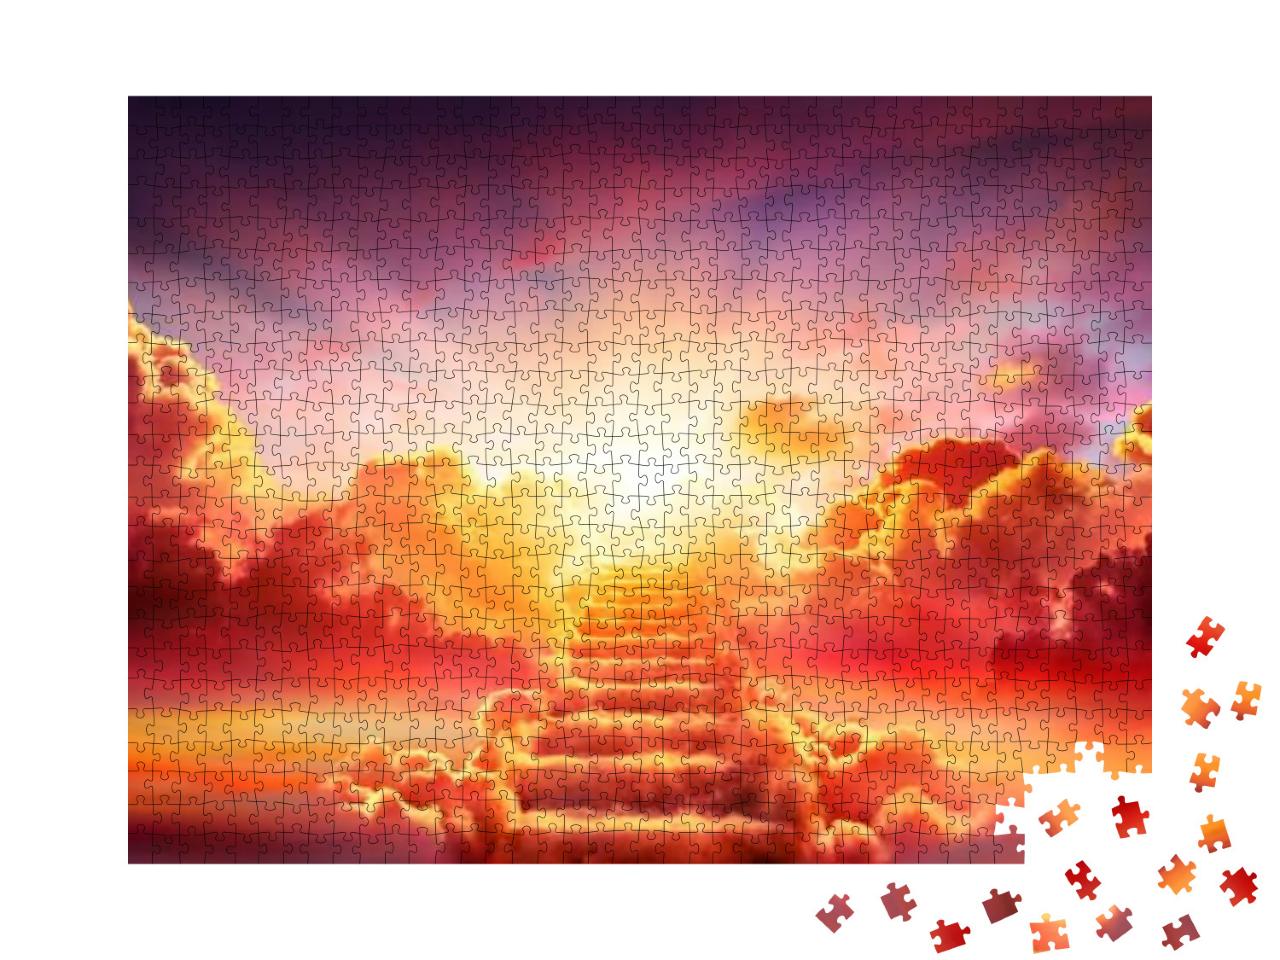 Puzzle 1000 Teile „Eingang des Himmels“